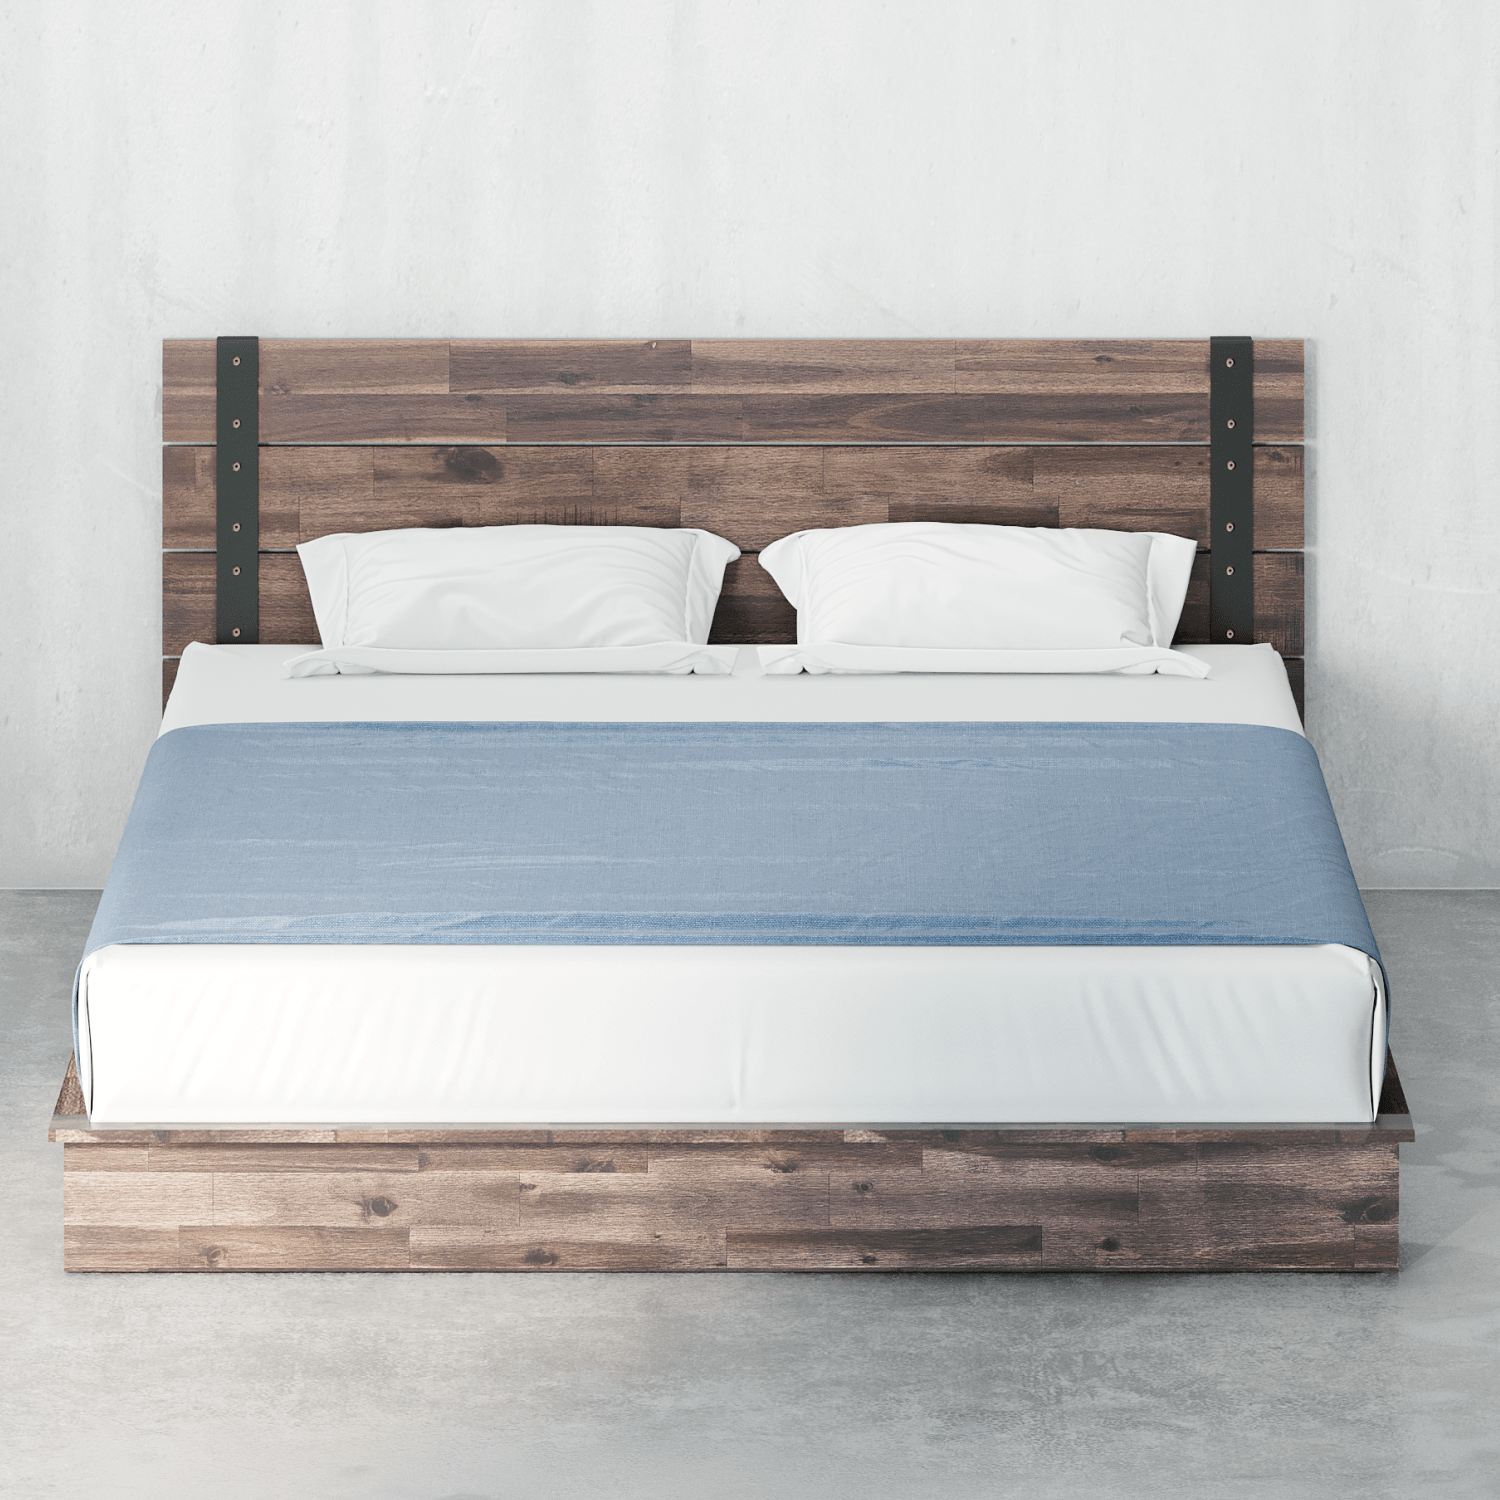 Brock Metal And Wood Platform Bed Frame, Full Size Wood Bed Frame